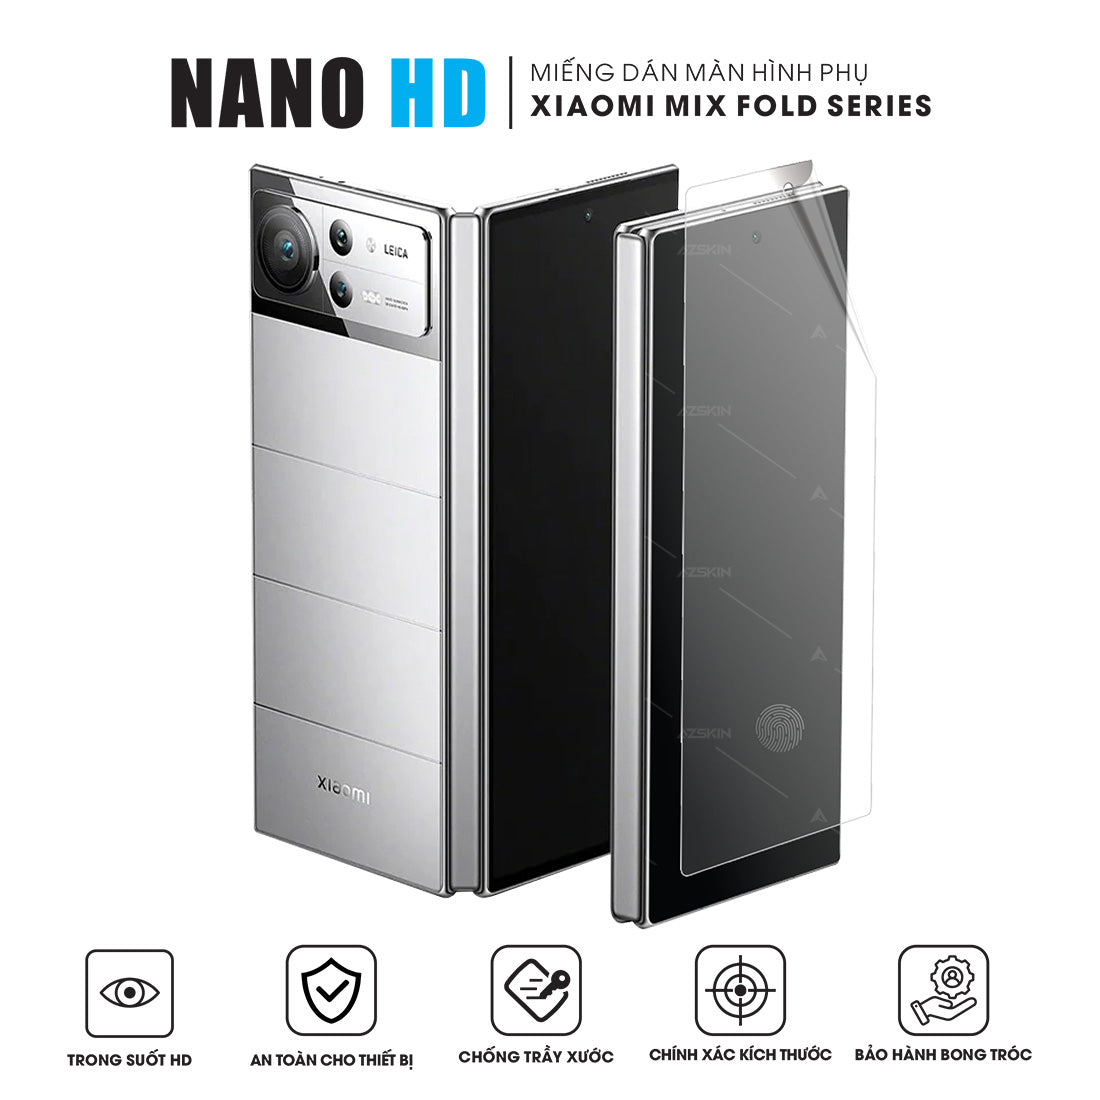 Miếng Dán Màn Hình Nano HD Xiaomi Mix Fold Series